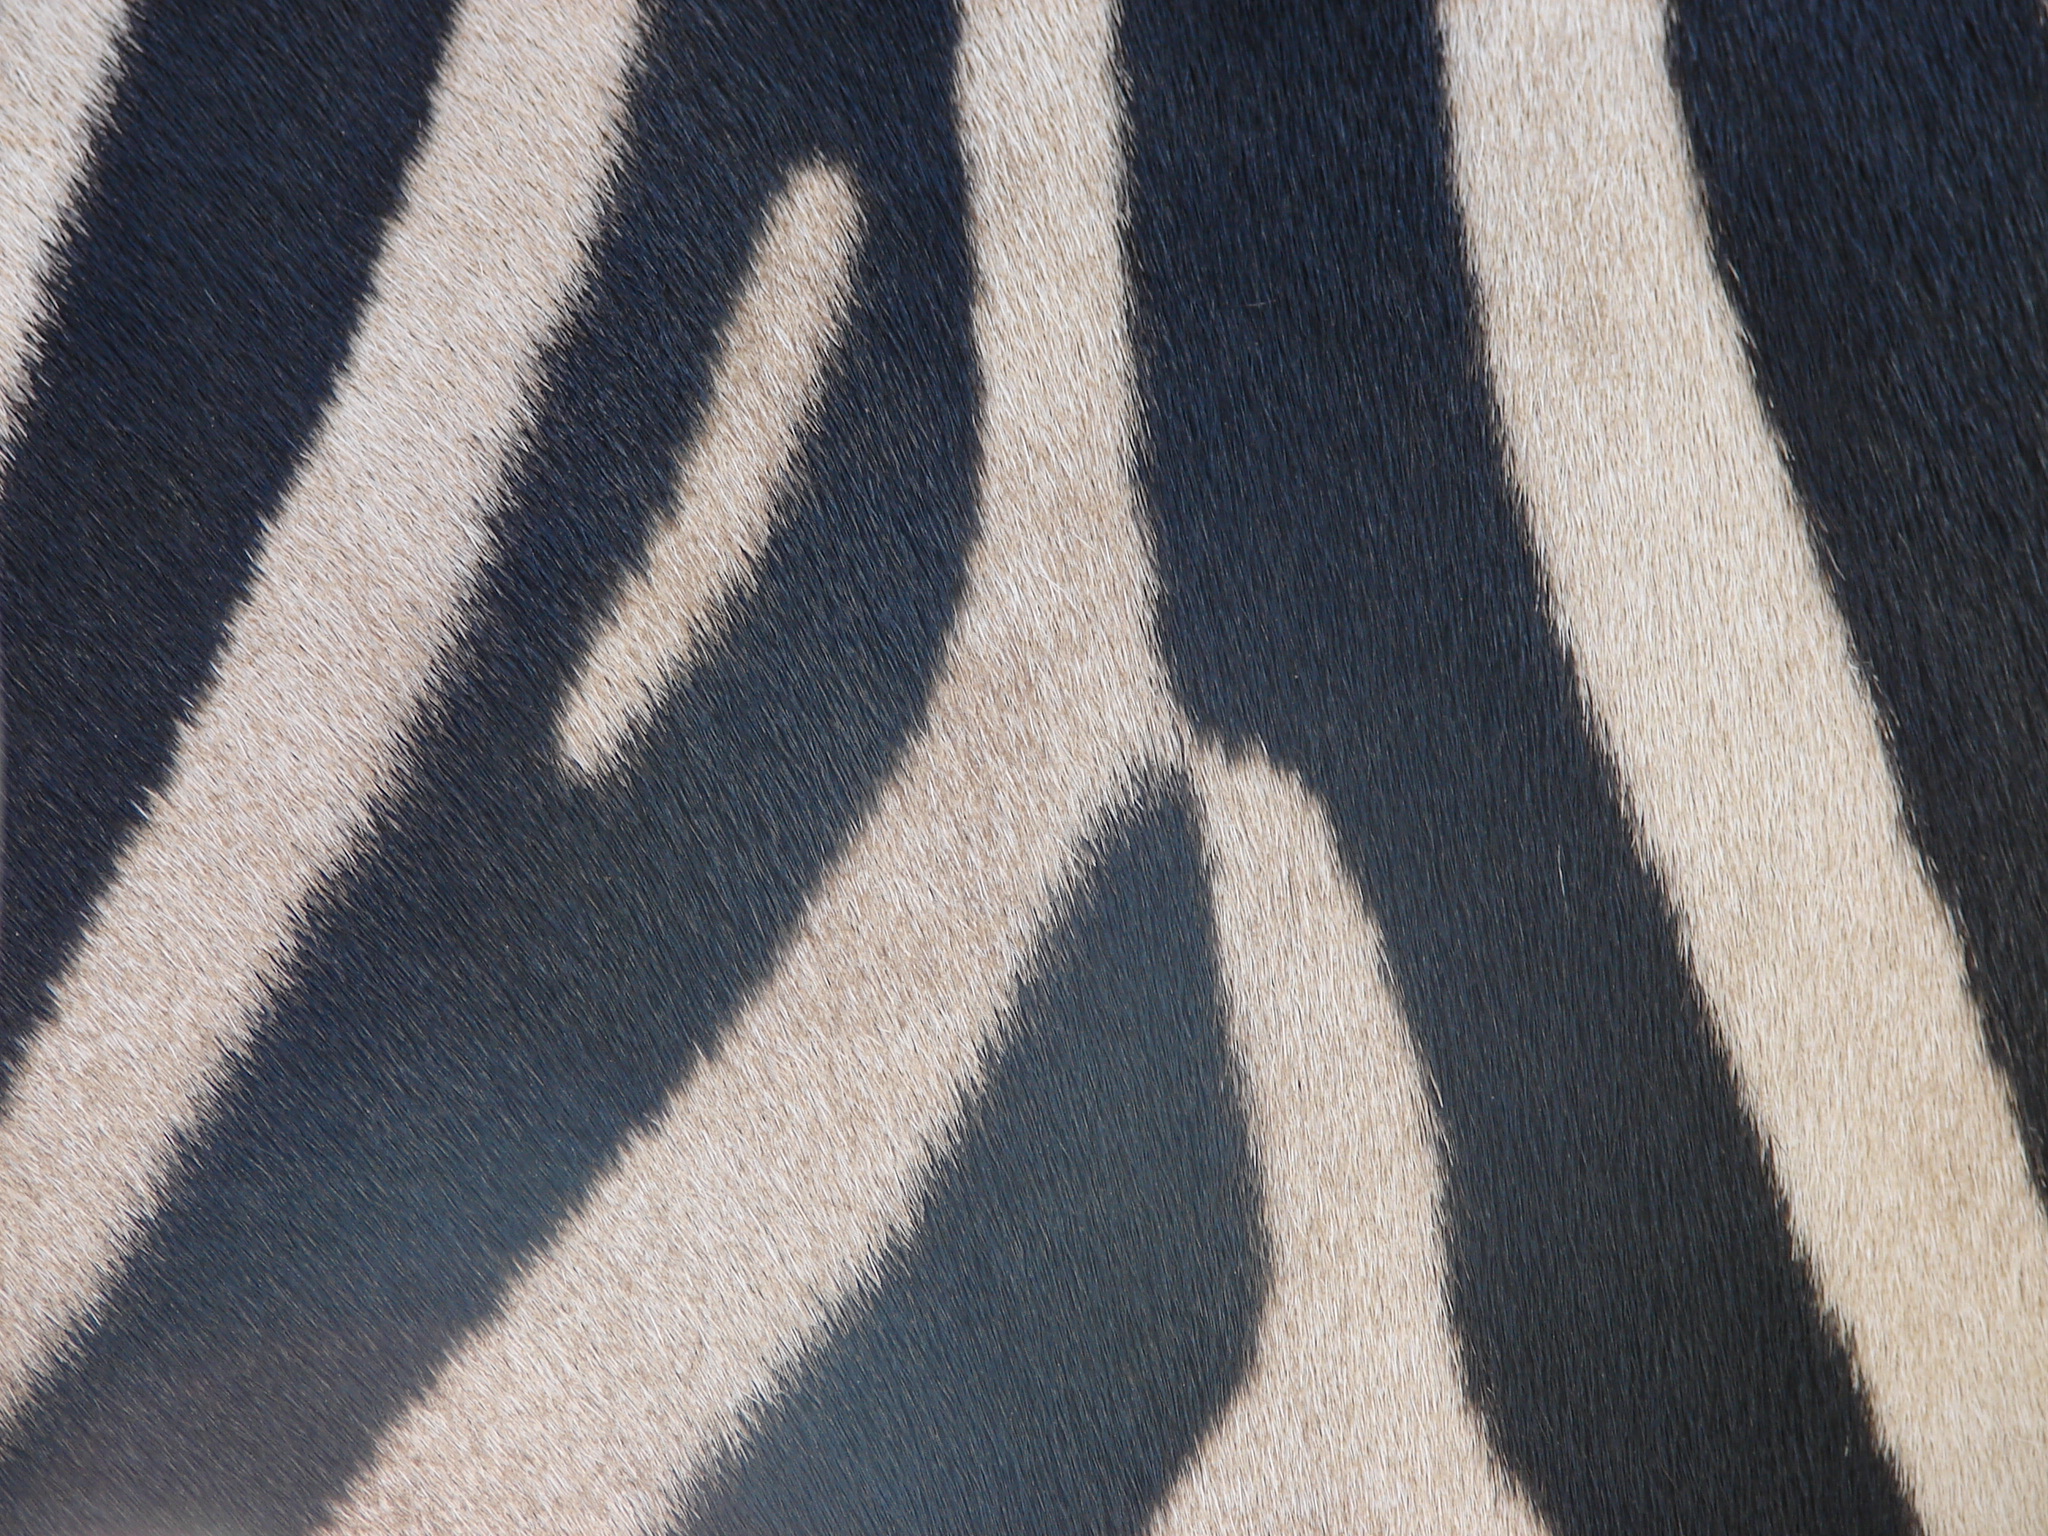 Striped Zebra Coat Texture 1